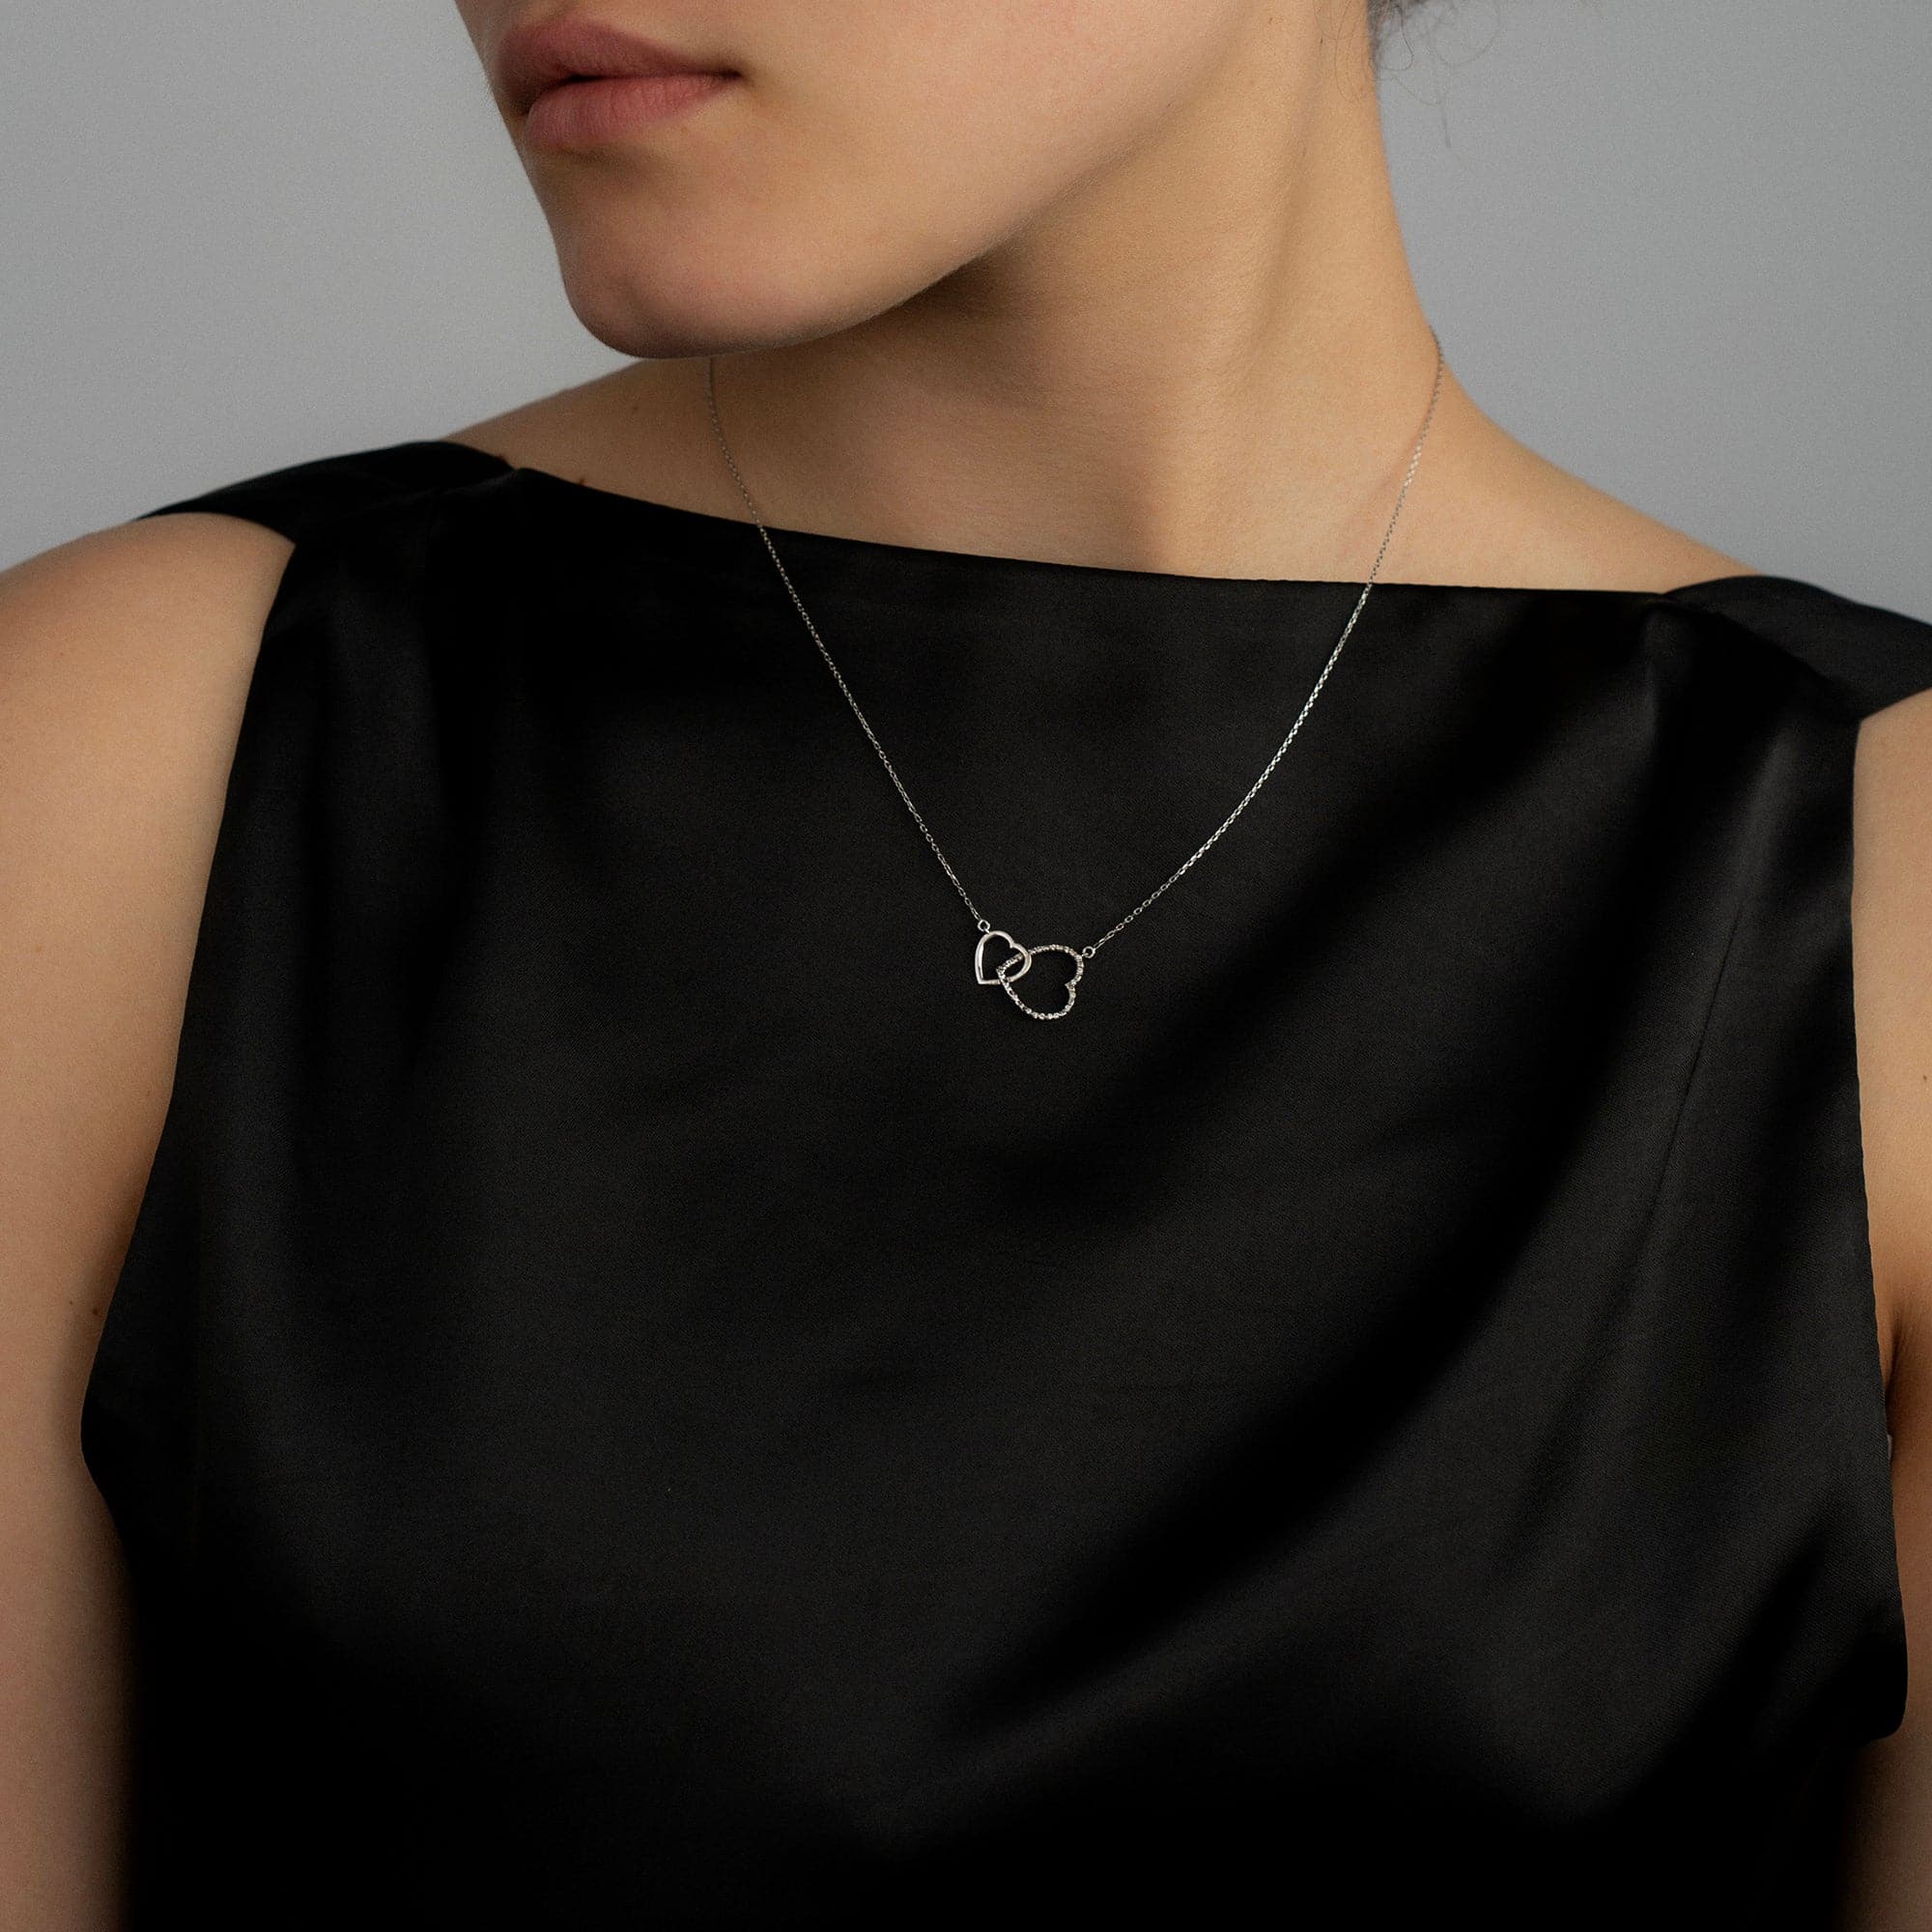 Gelin Four Leaf Clover Pendant Necklace in 14K Gold – Gelin Diamond